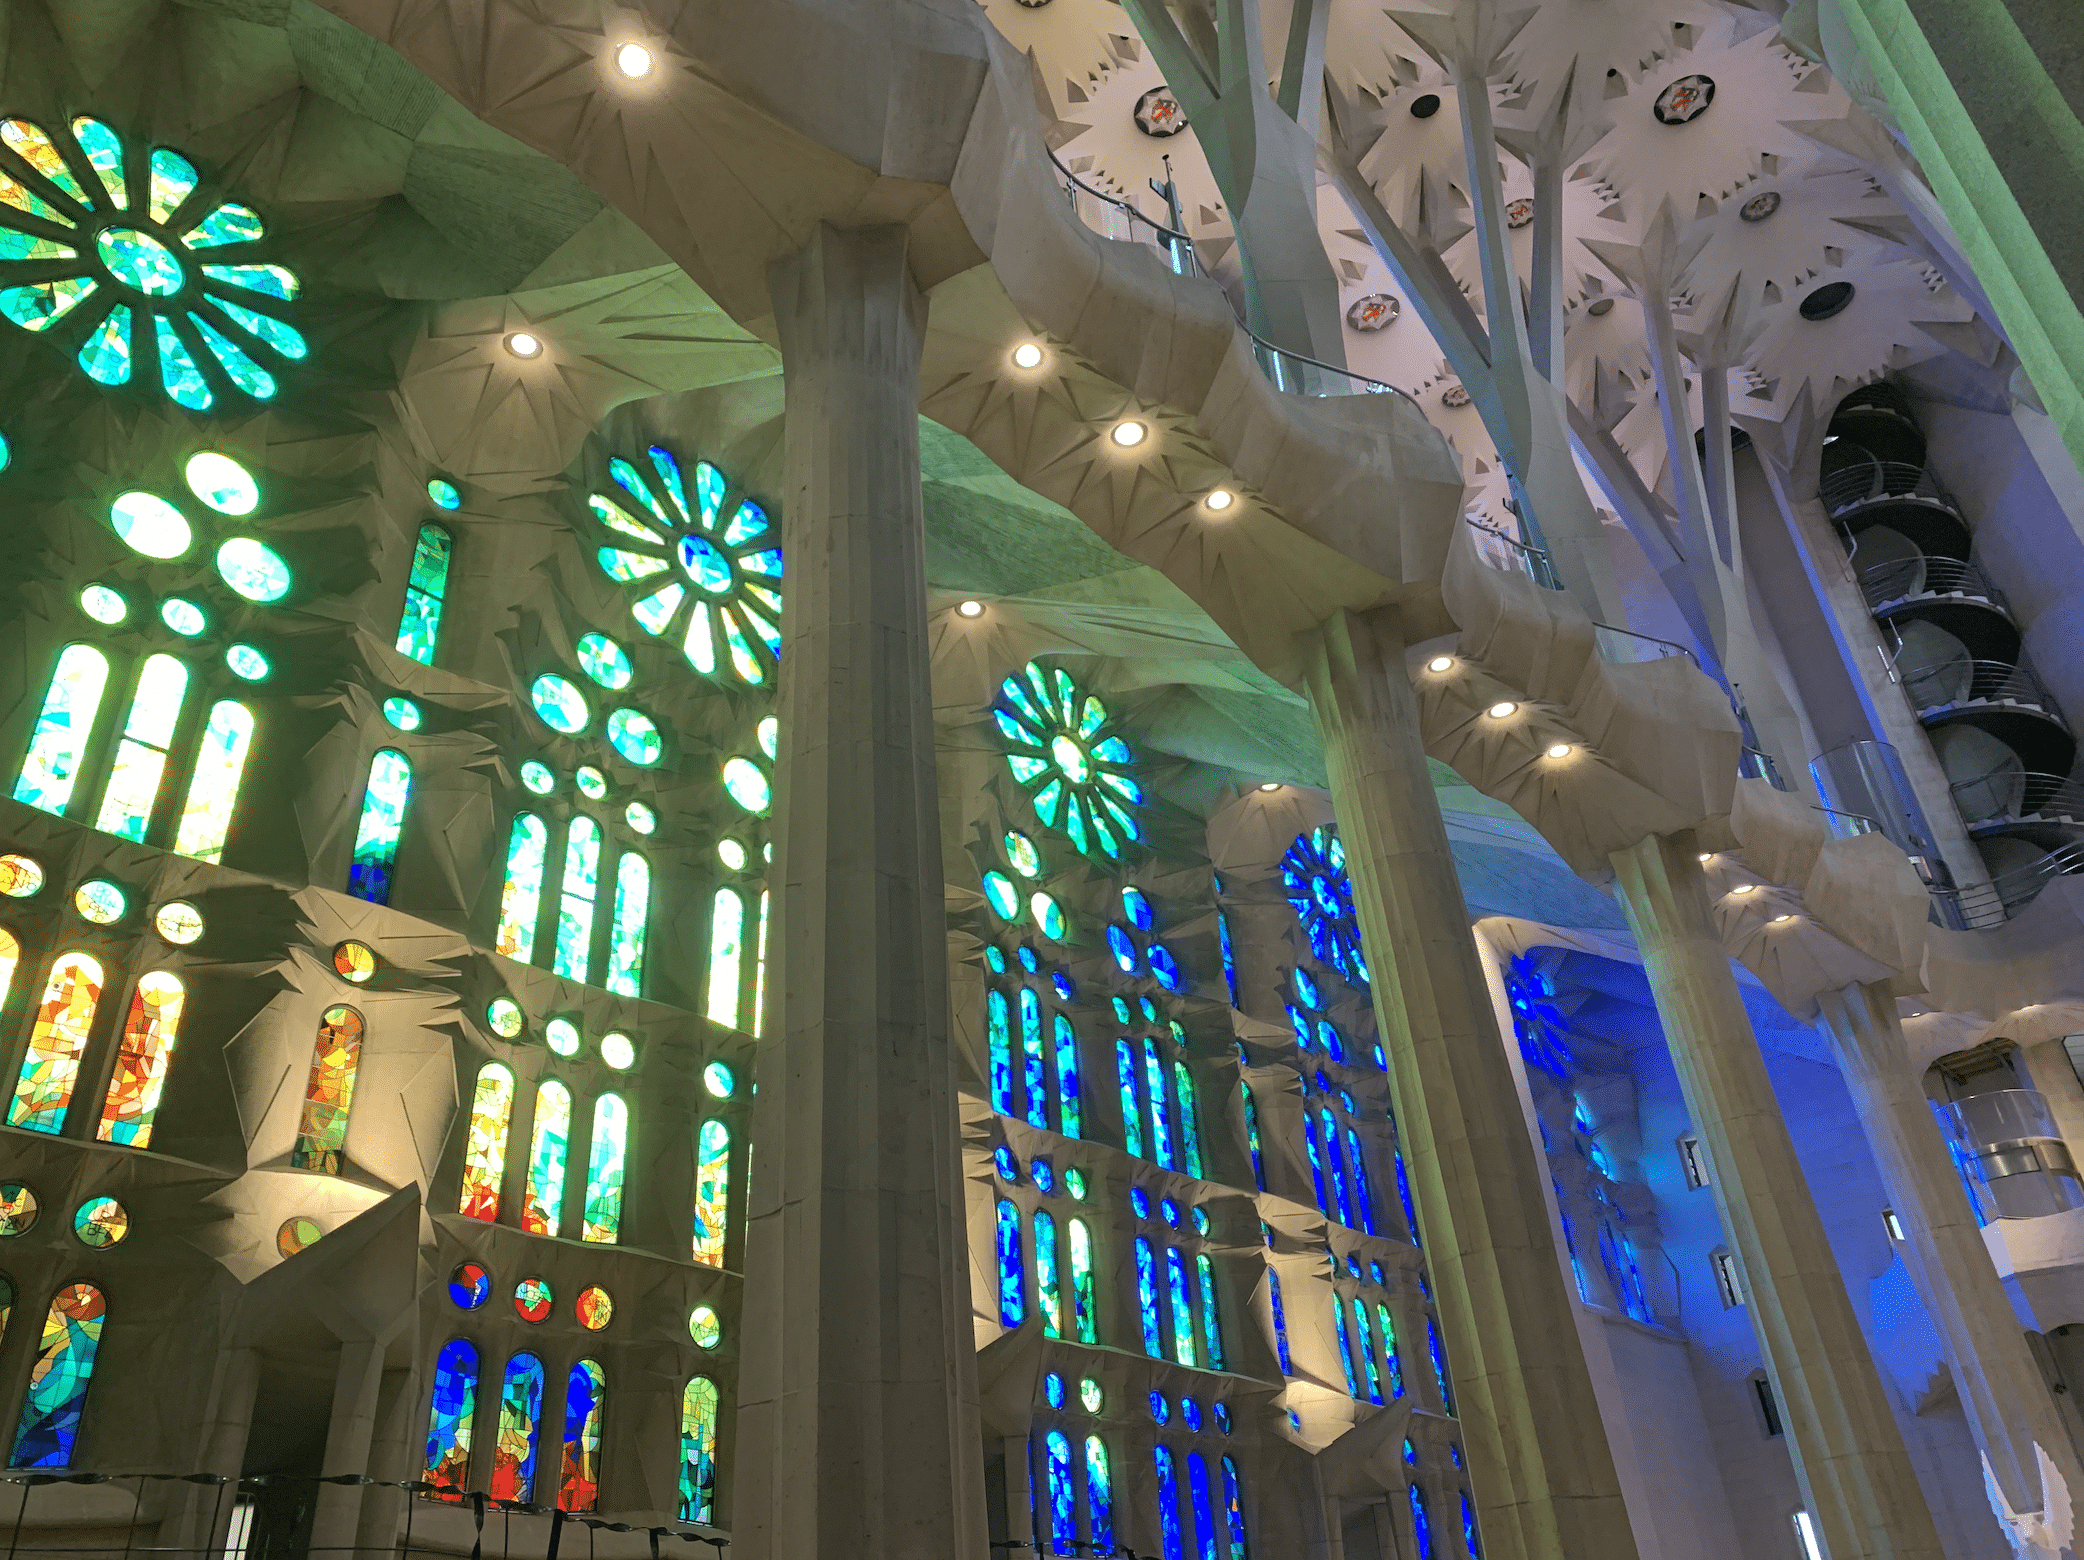 les vitraux a l'interieur de la sagrada familia a barcelone